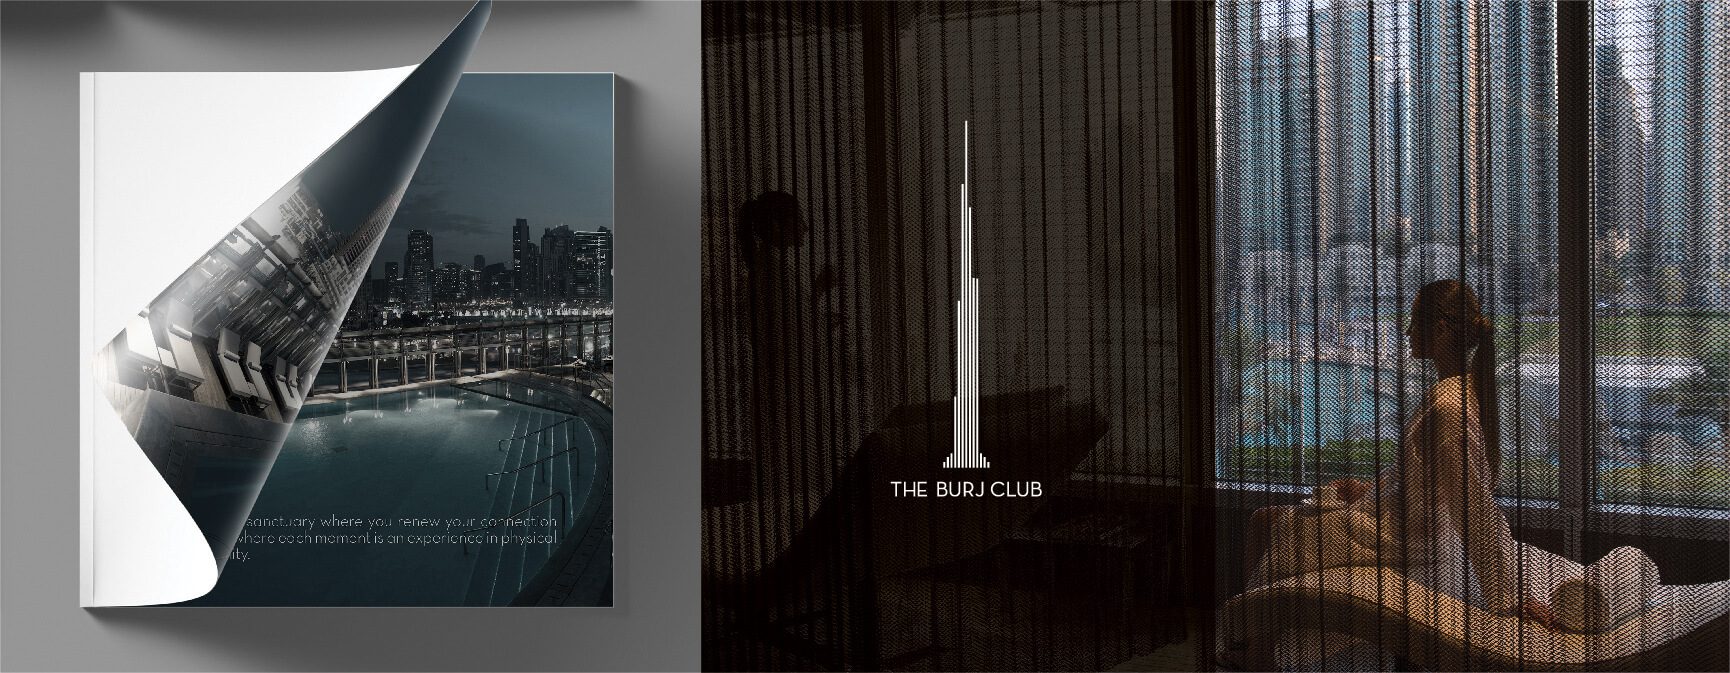 The Burj Club